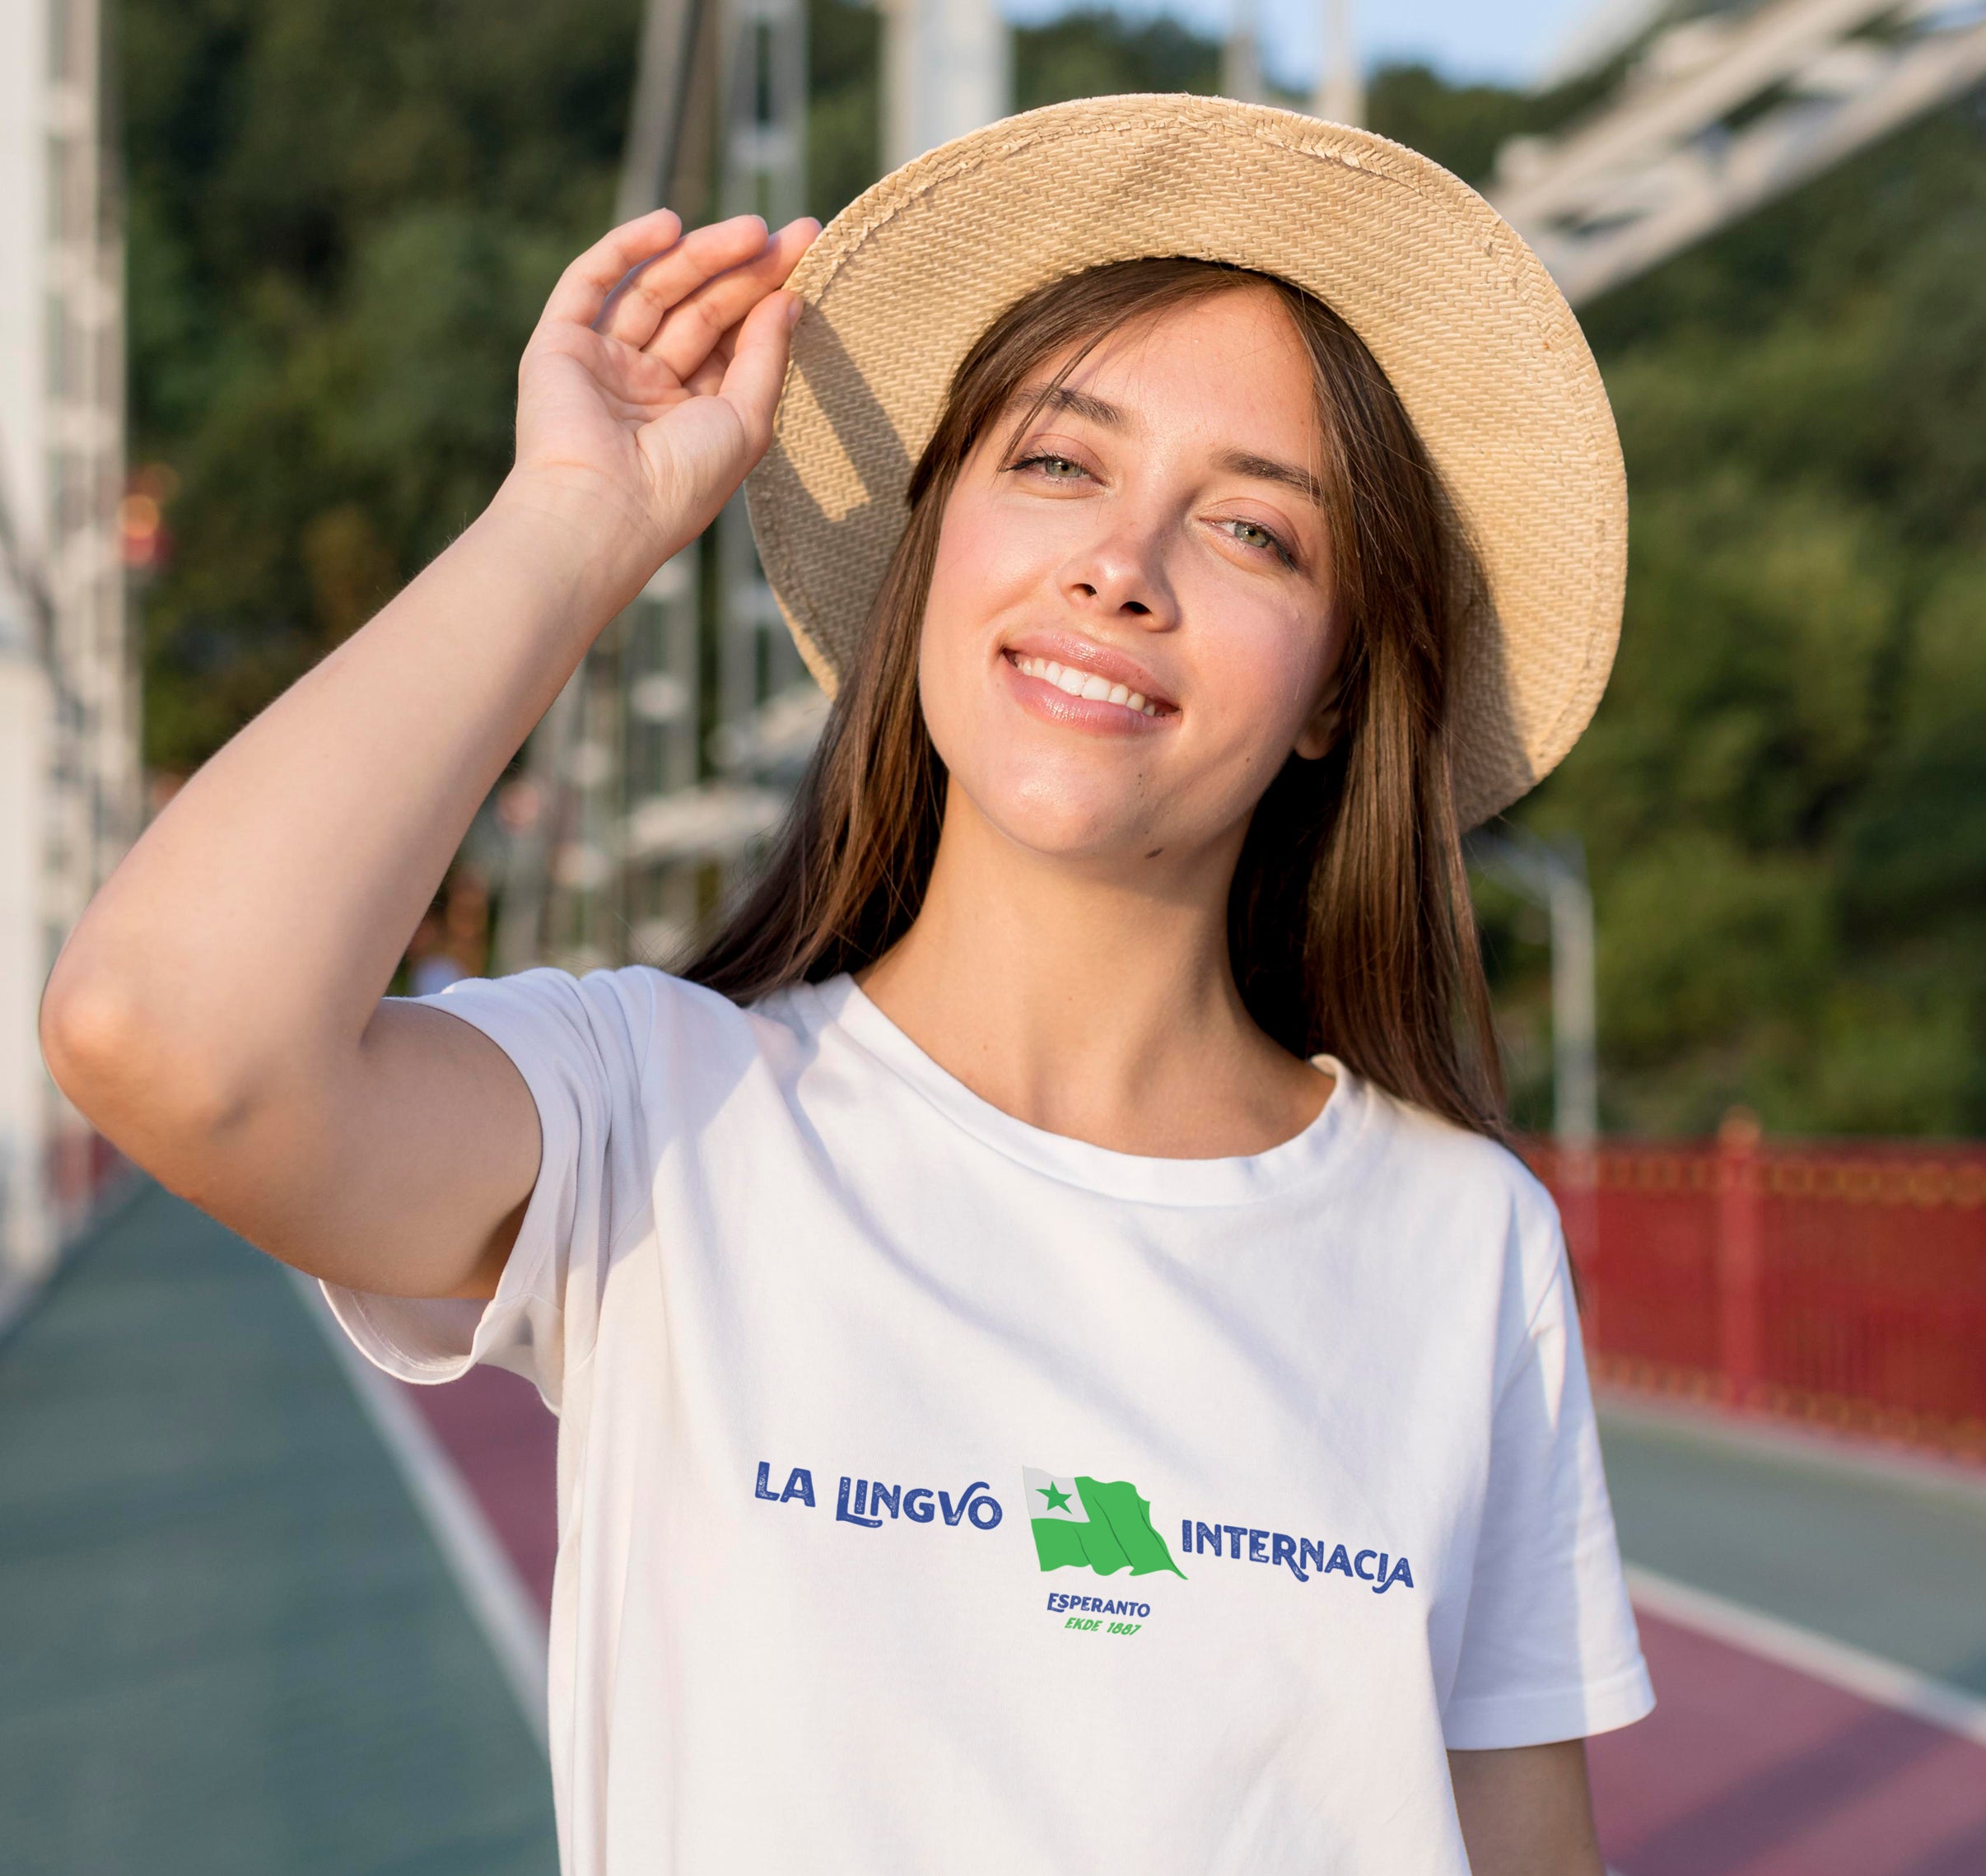 La Lingvo Internacia Esperanto Flago Unisex T-Shirt